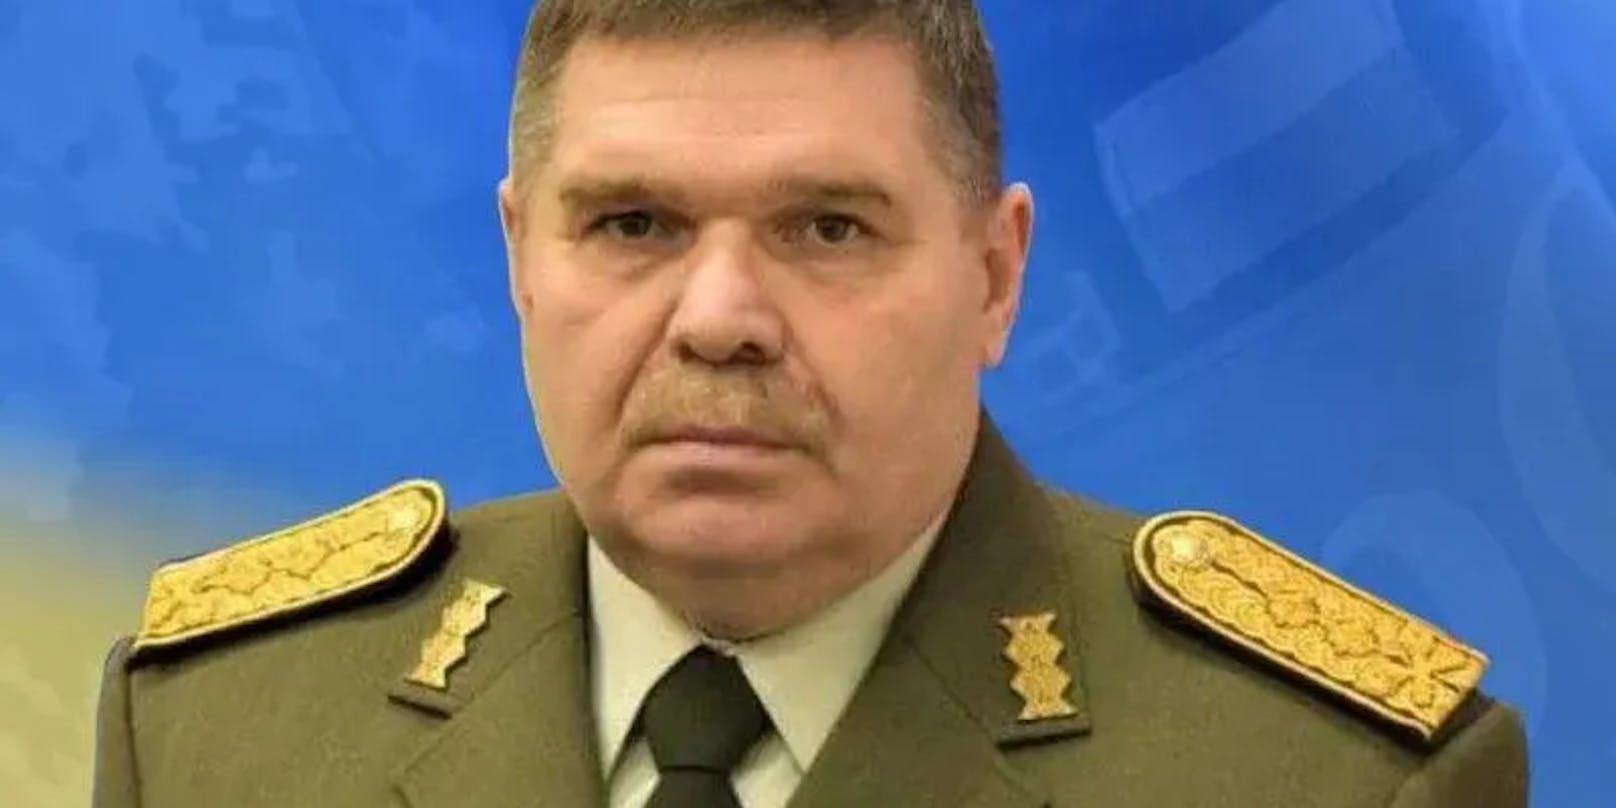 Igor Tantsyura, Kommandant der territorialen Verteidigungskräfte der Ukraine, soll bei einem russischen Angriff getötet worden sein.